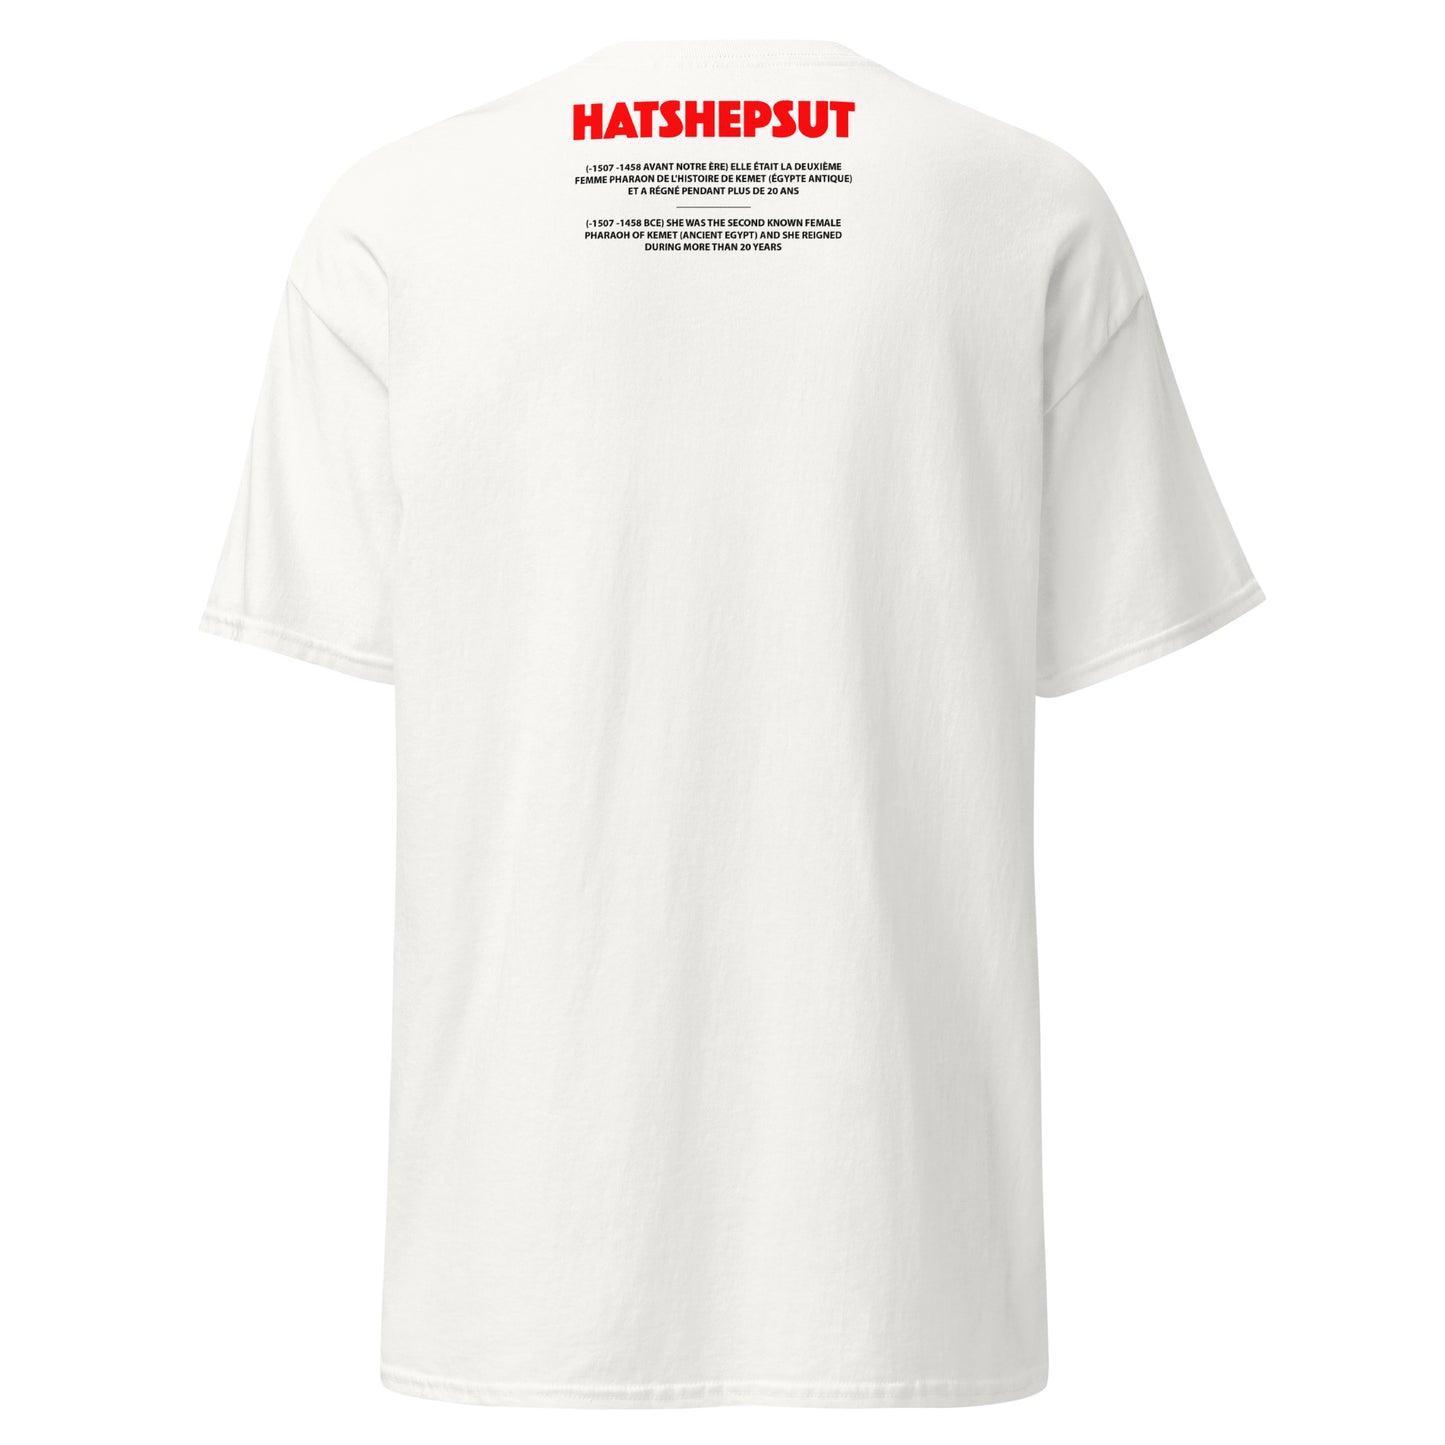 HATSHEPSUT (T-shirt)